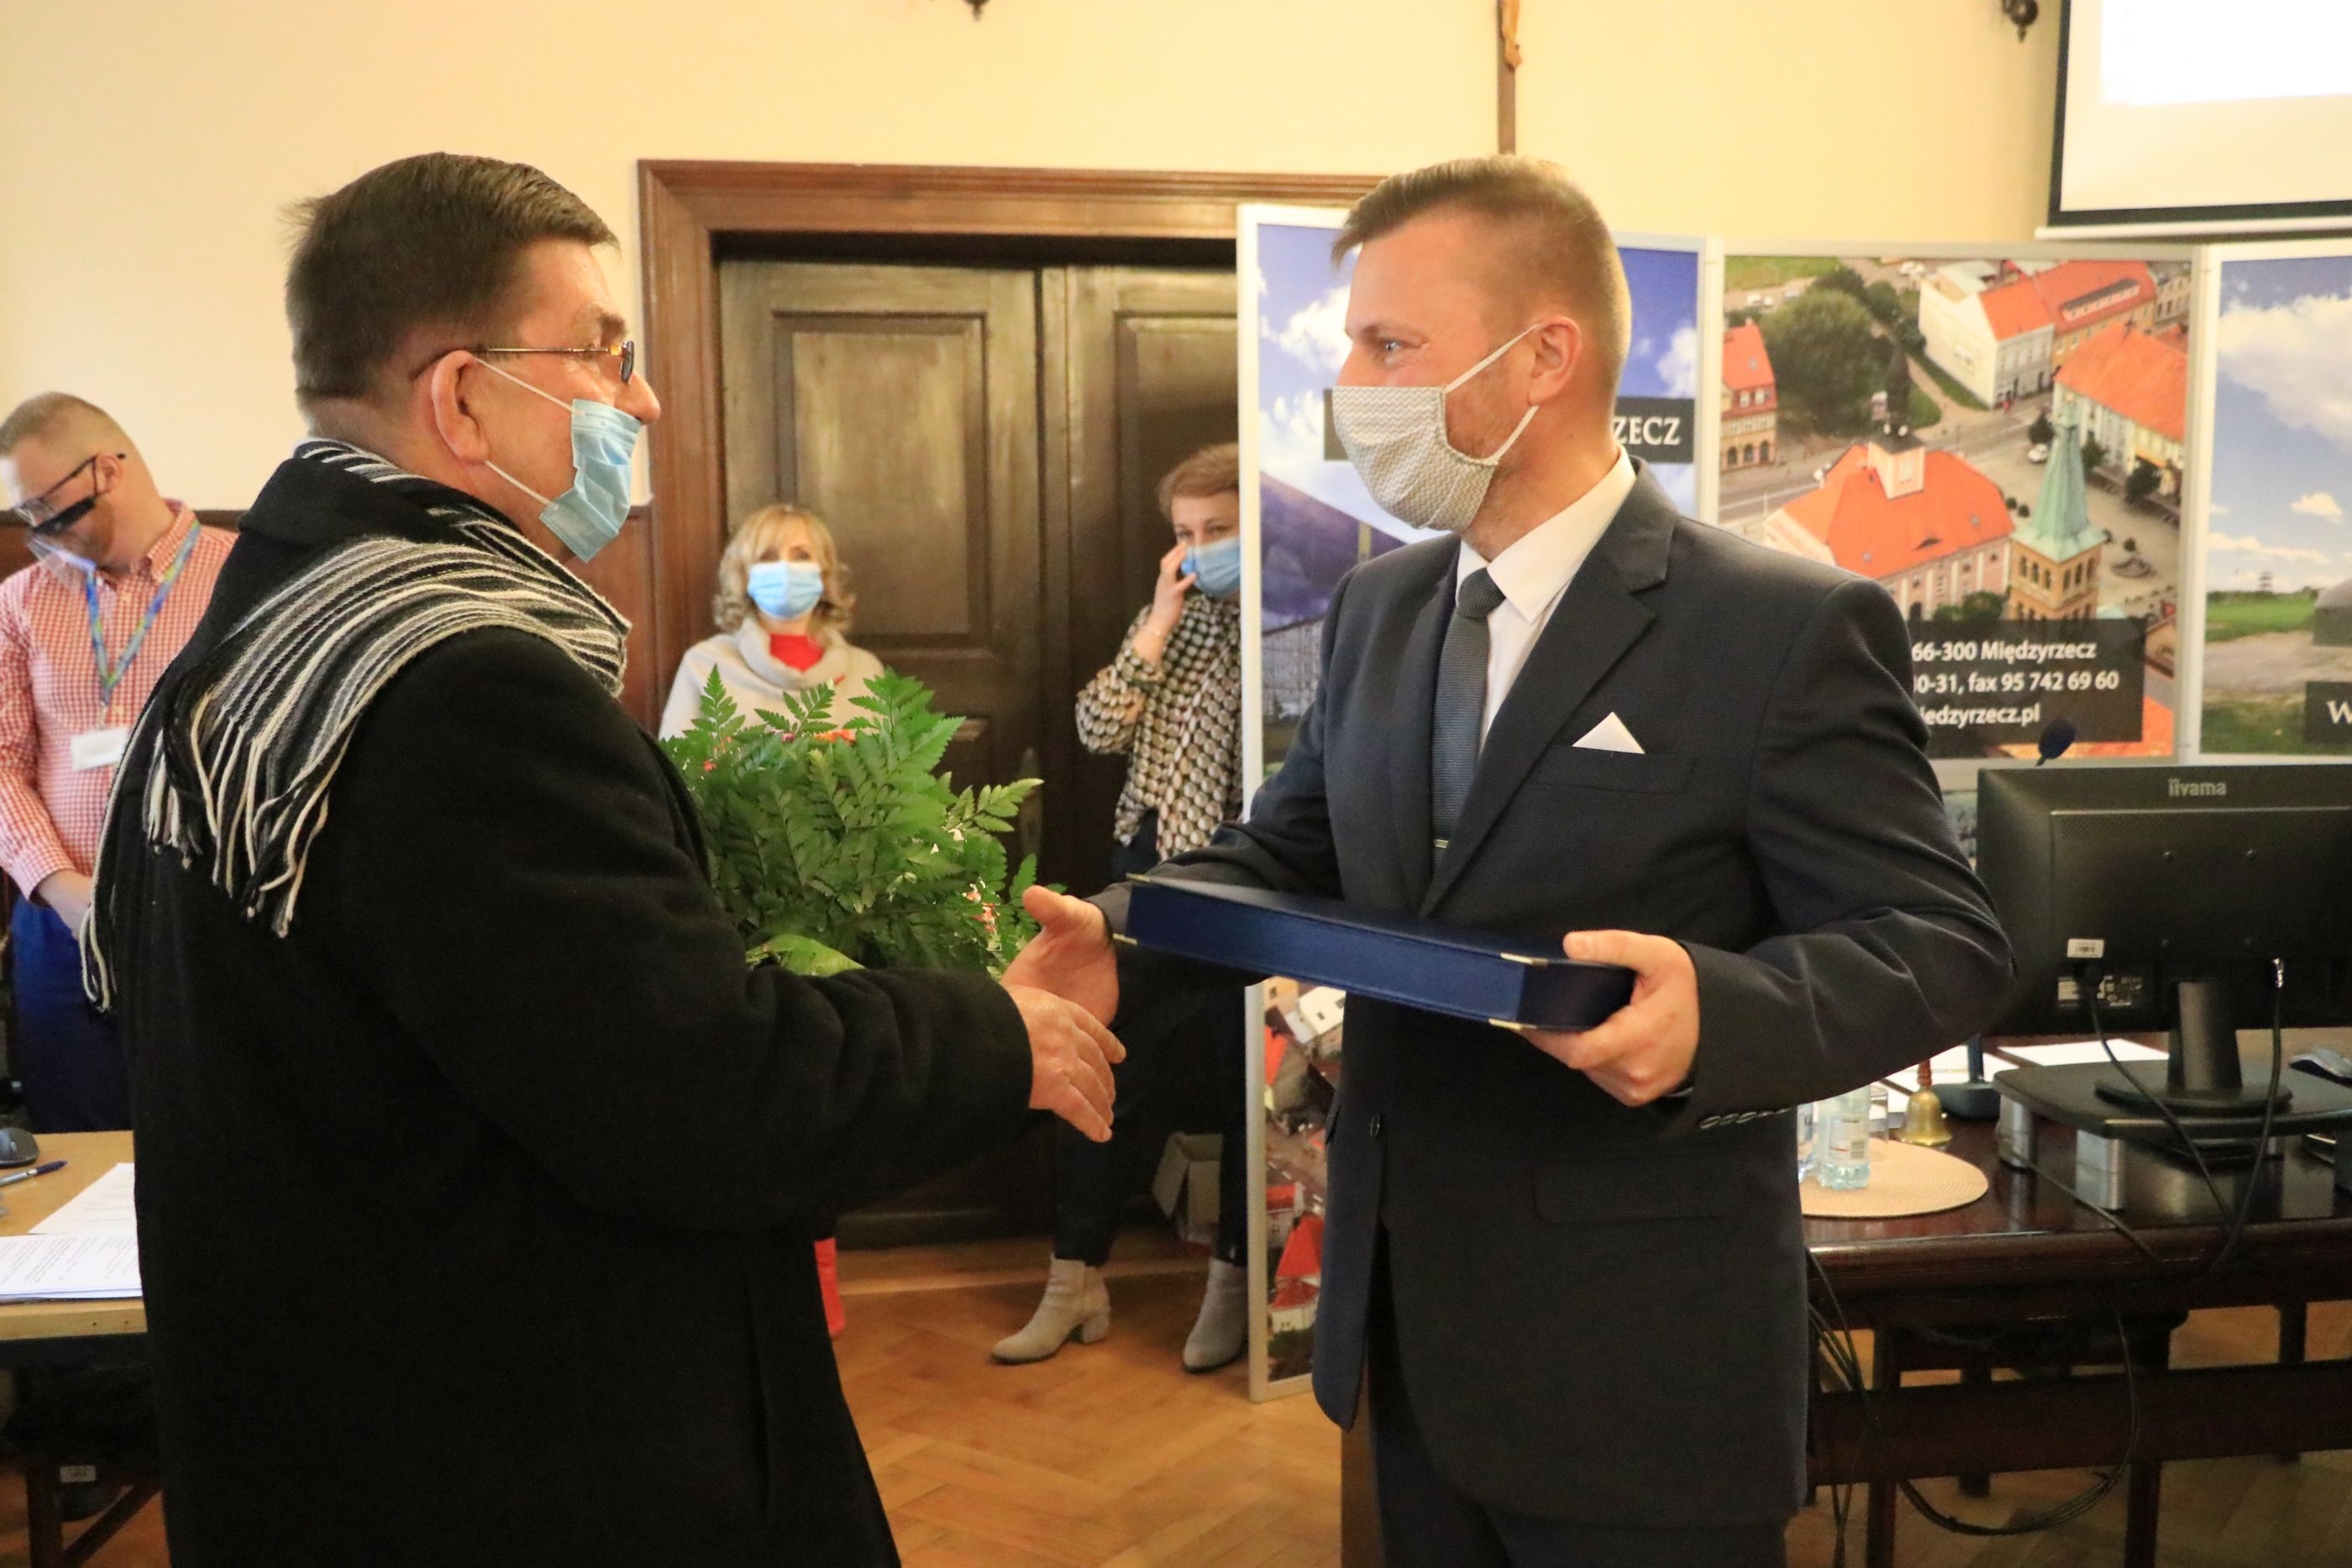 Ilustracja do informacji: Władze doceniły i uhonorowały nauczyciela Andrzeja Kaczmarka